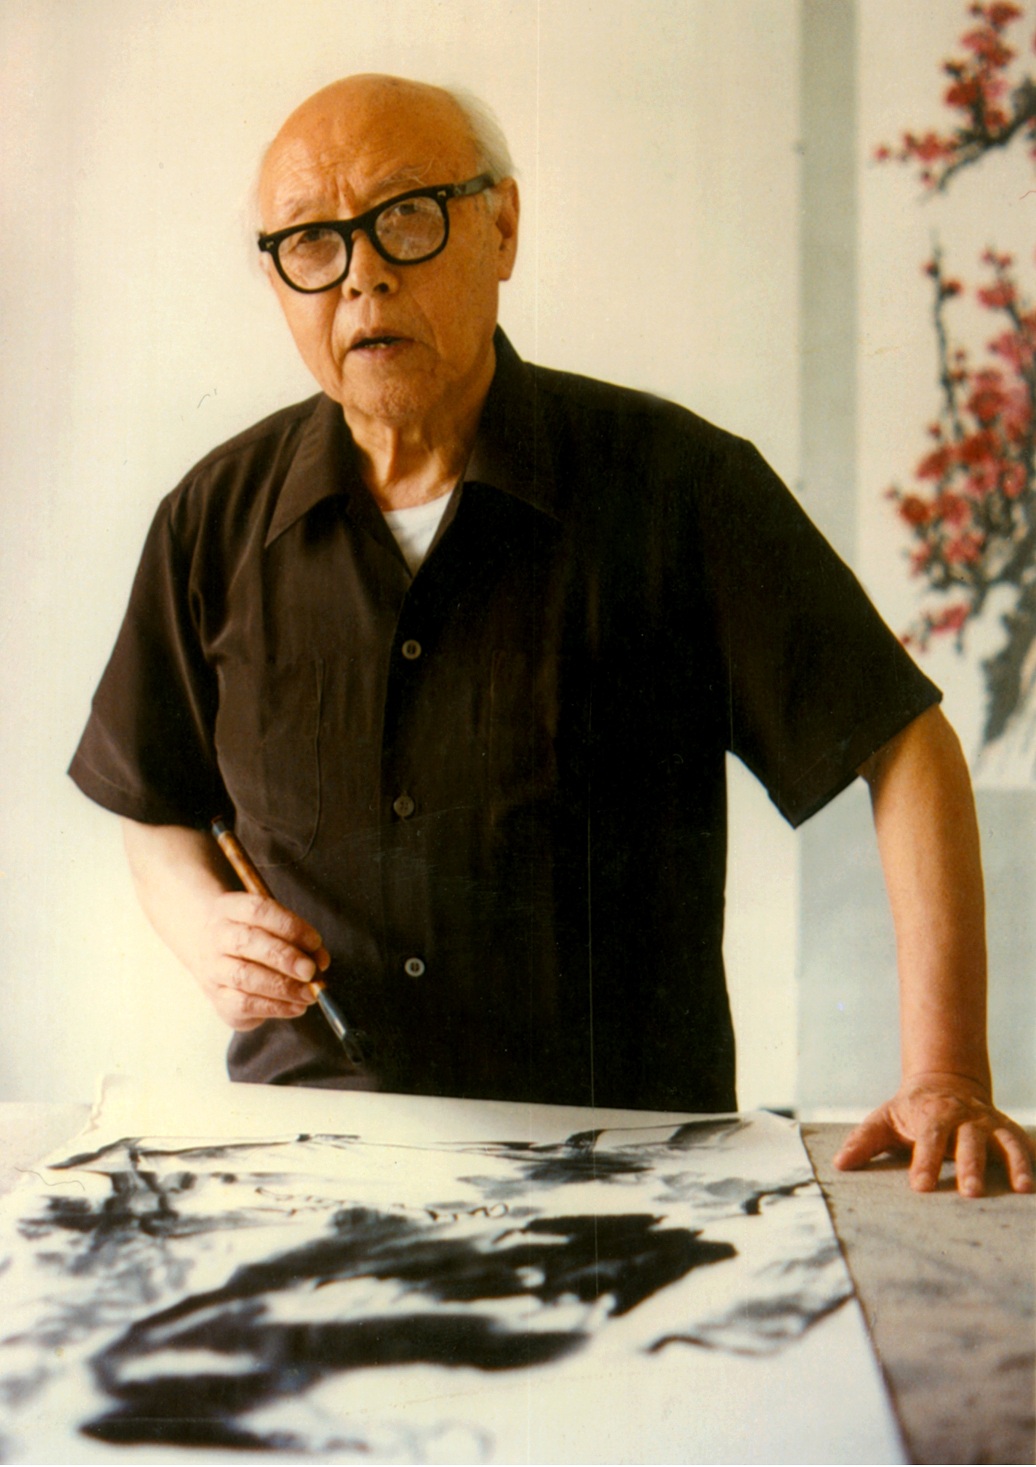 1978年 80岁的苦禅先生在自己的画室作画.jpg